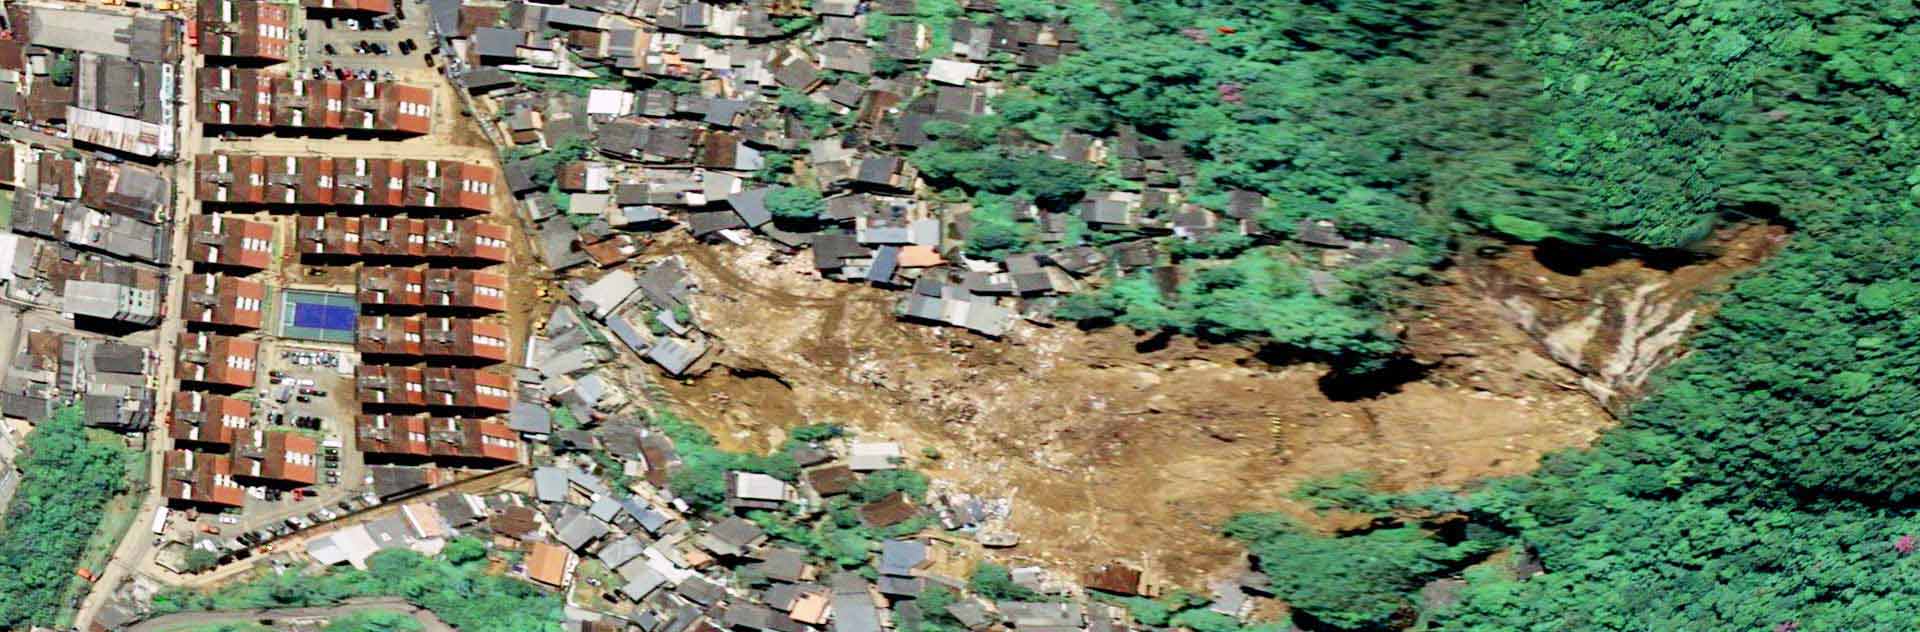 Pléiades Neo image satellite - Petropolis, Brazil